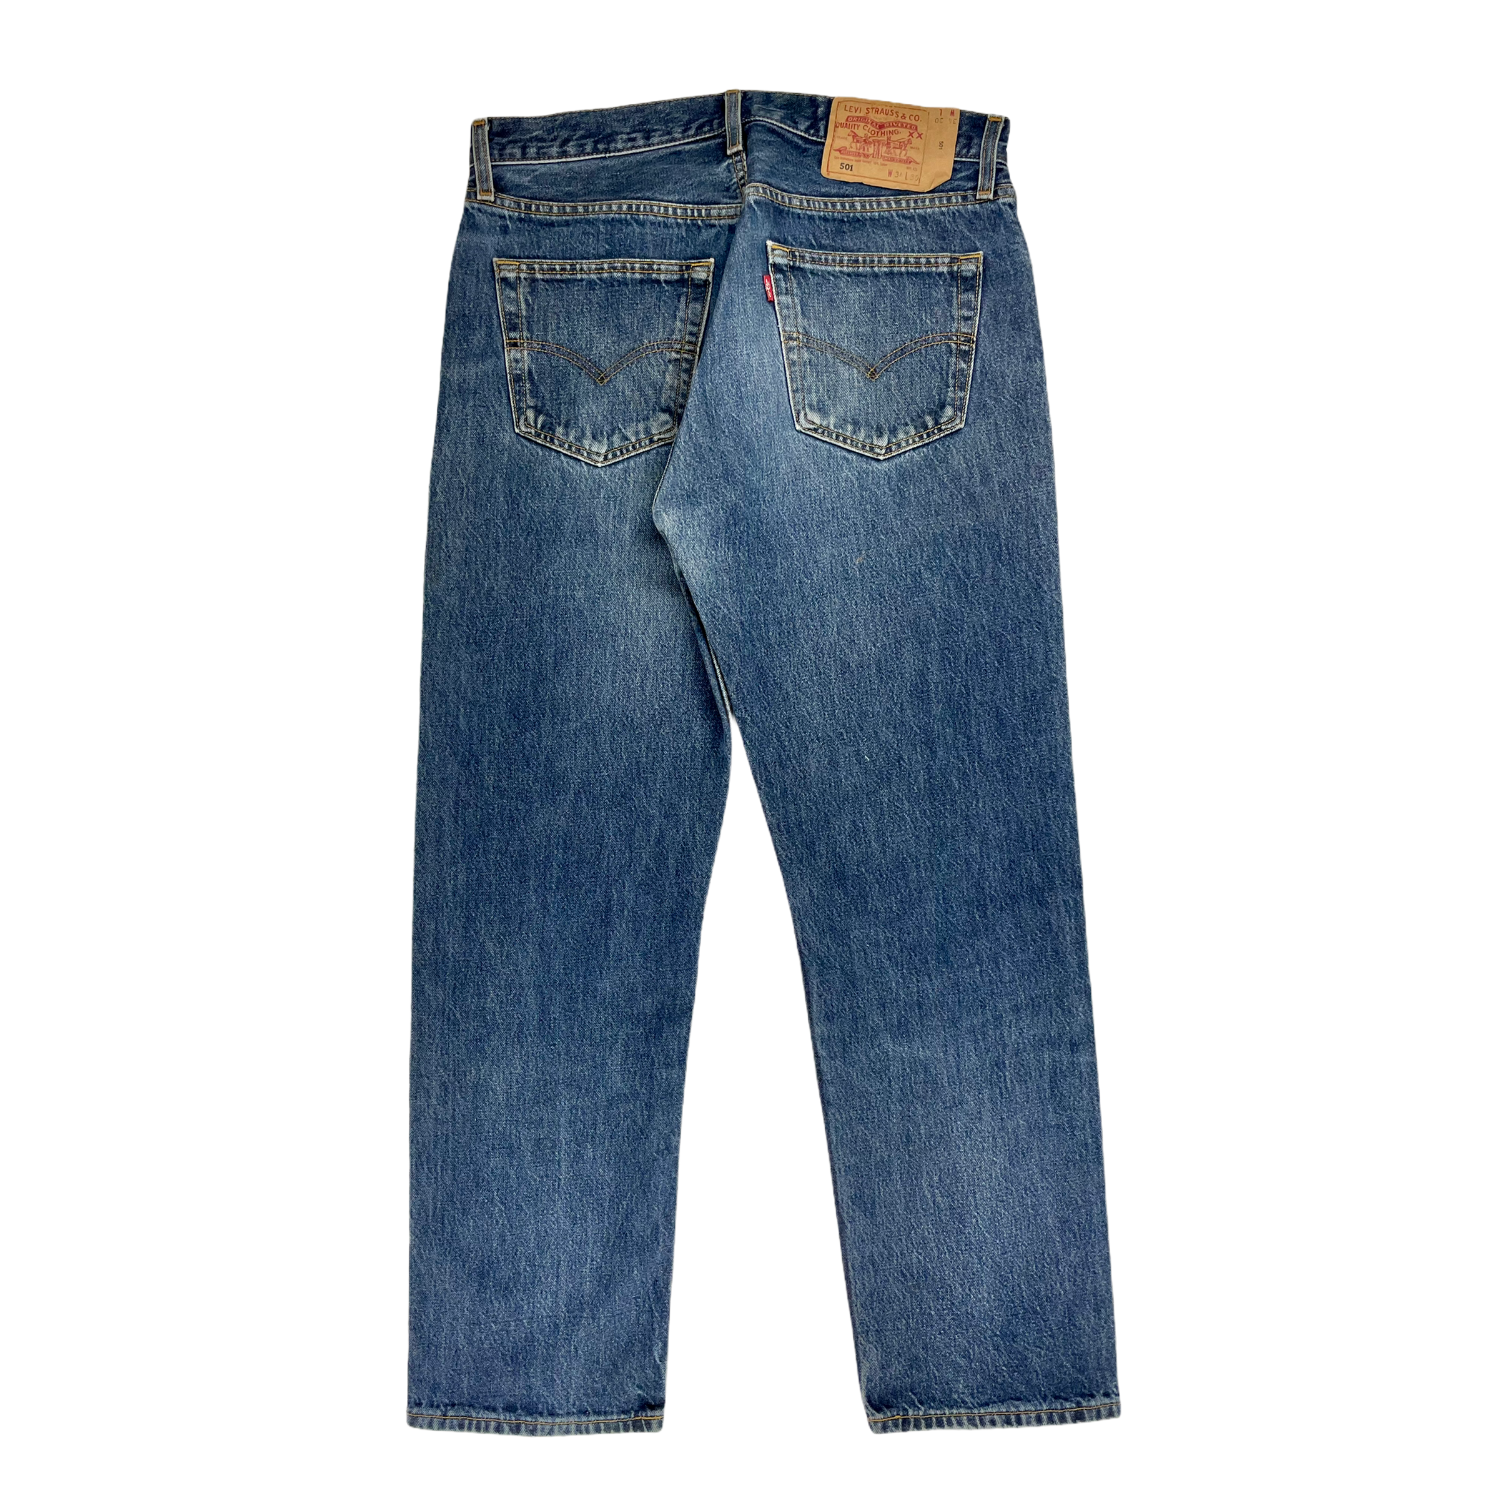 Vintage Levi's jeans 501 - 34/30 - Restorecph